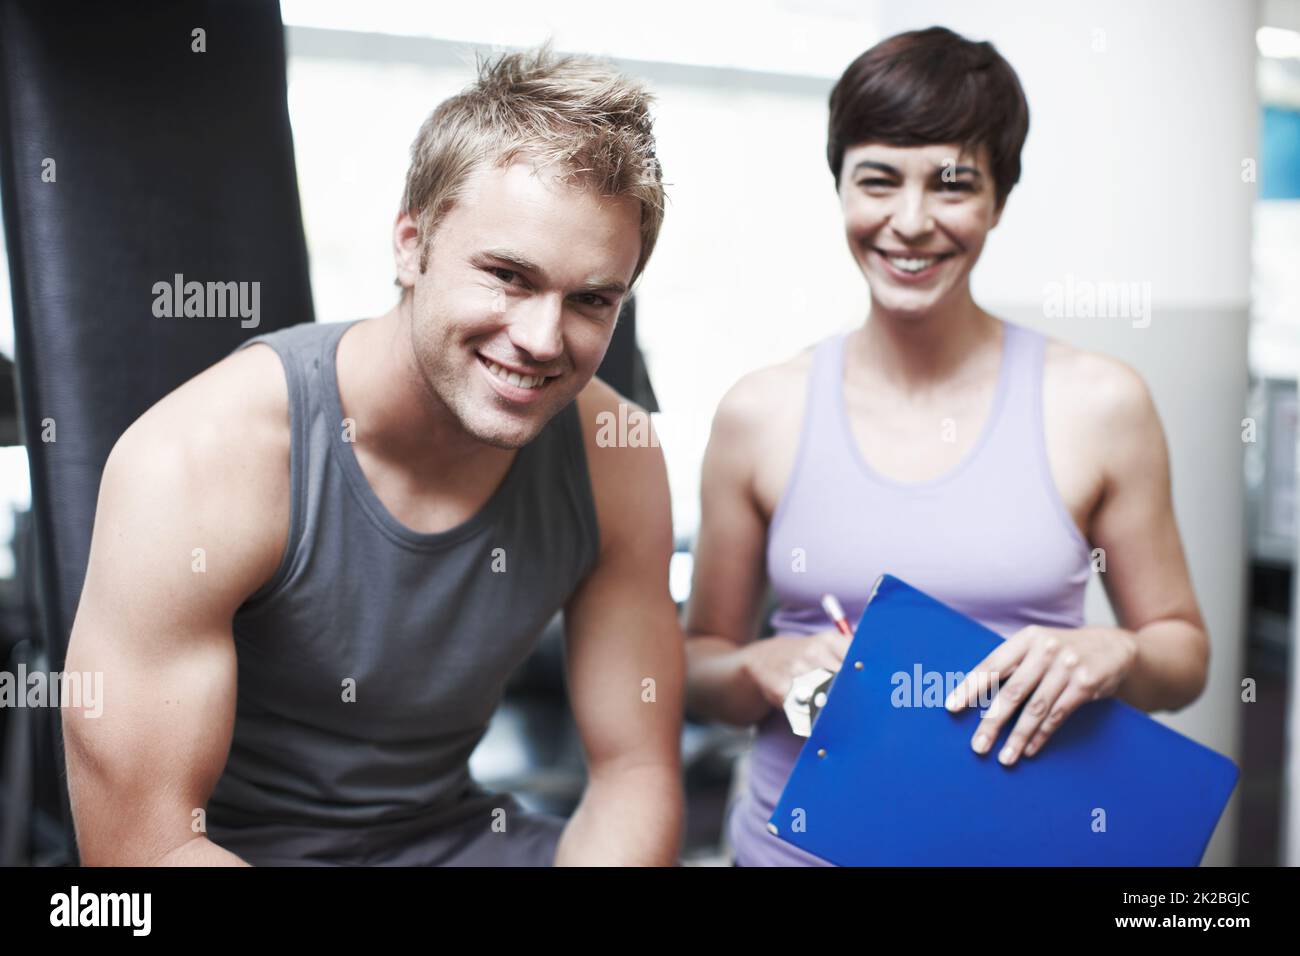 Sie hält mich motiviert. Beschnittenes Porträt eines hübschen jungen Mannes und seines persönlichen Trainers im Fitnessstudio. Stockfoto